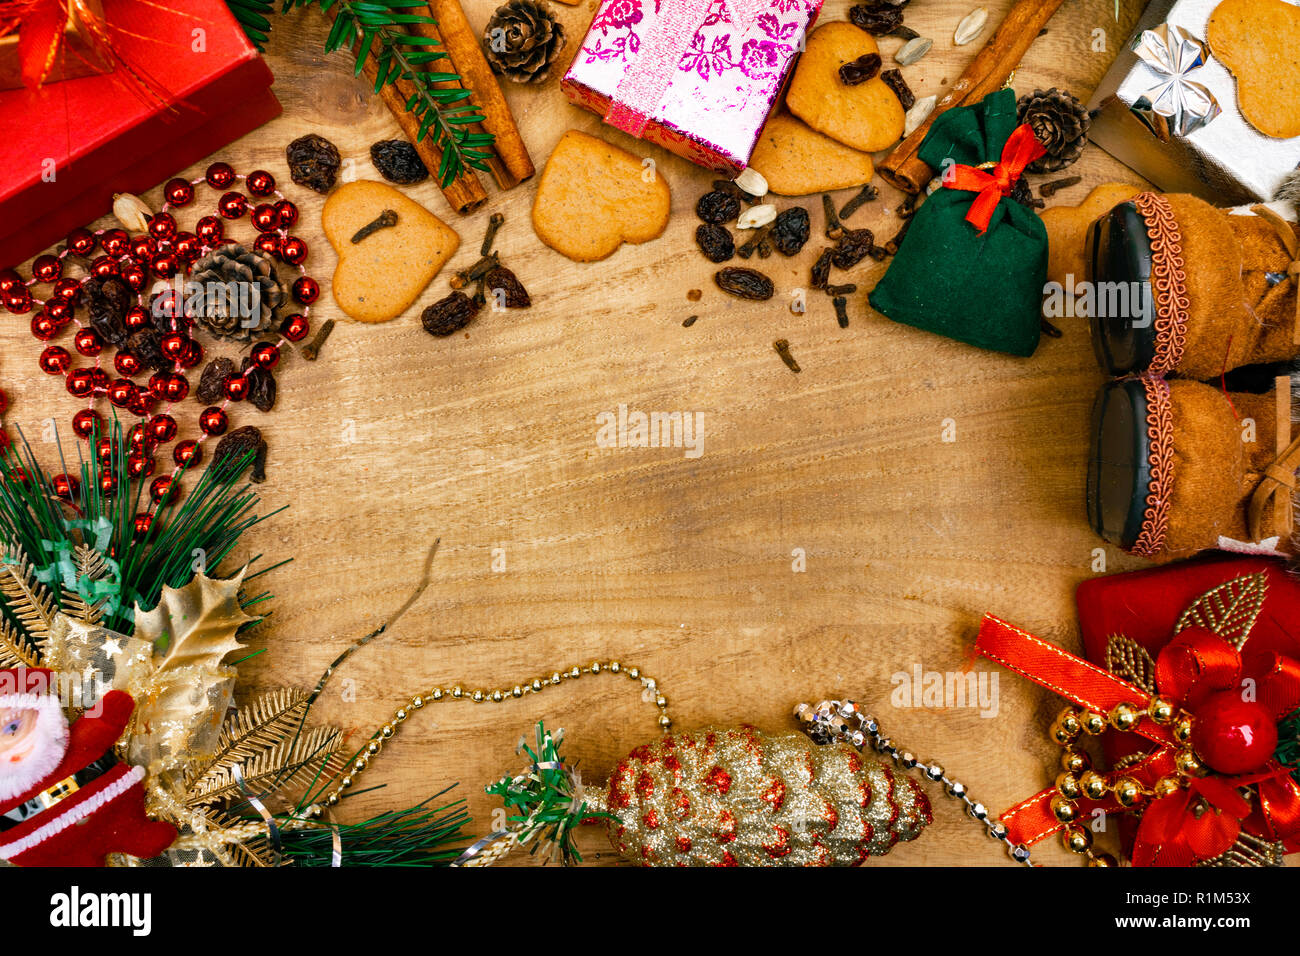 Weihnachten Holz- Hintergrund, Santa Stiefel, Lebkuchen, Rosinen, Ingwer,  Kardamom, Nelken, Zimt Lebkuchen dekorative Geschenke Girlanden Kopie Raum  Stockfotografie - Alamy